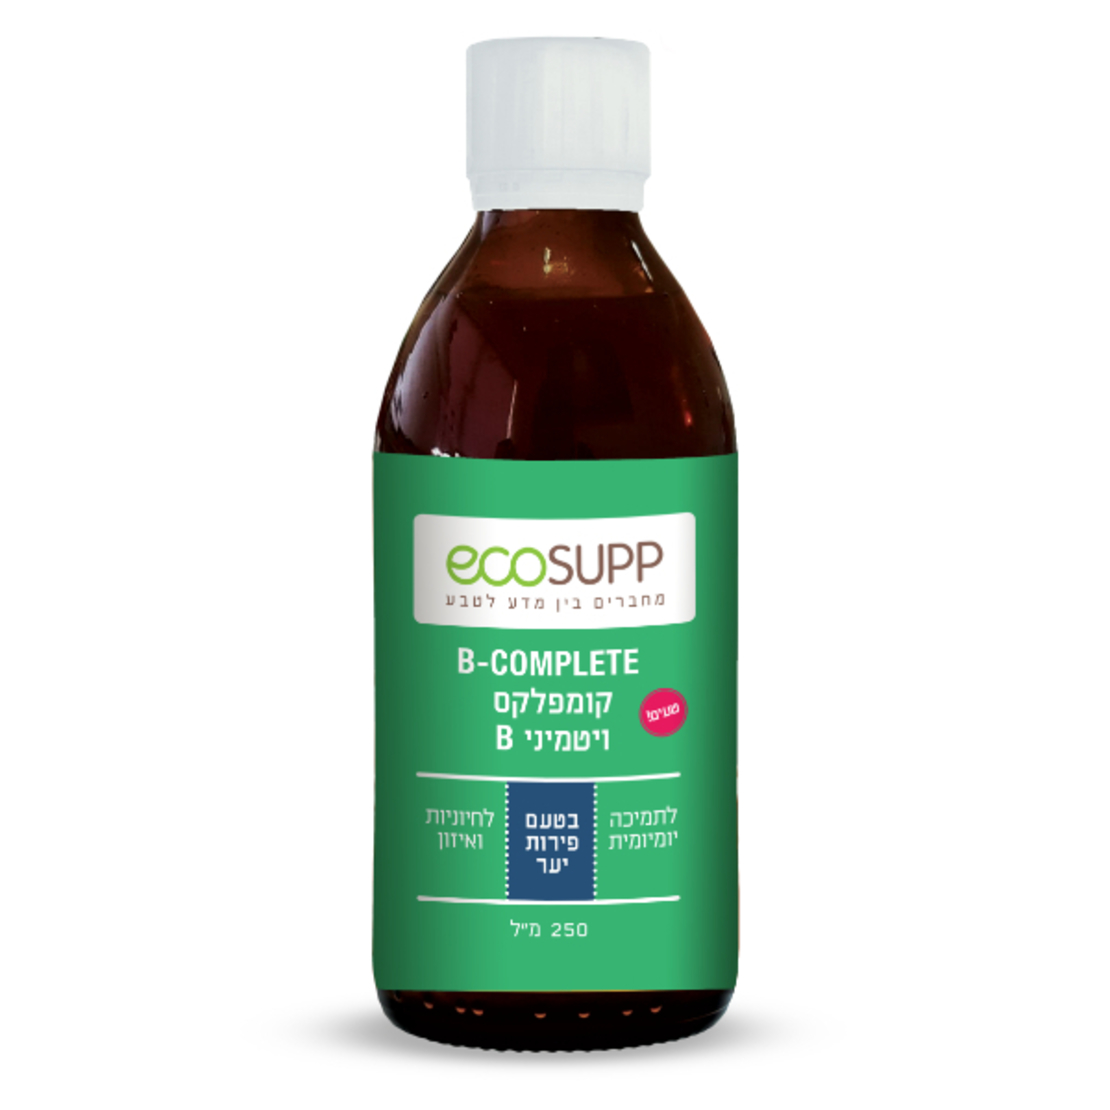 B-COMPLETE קומפלקס B Ecosupp